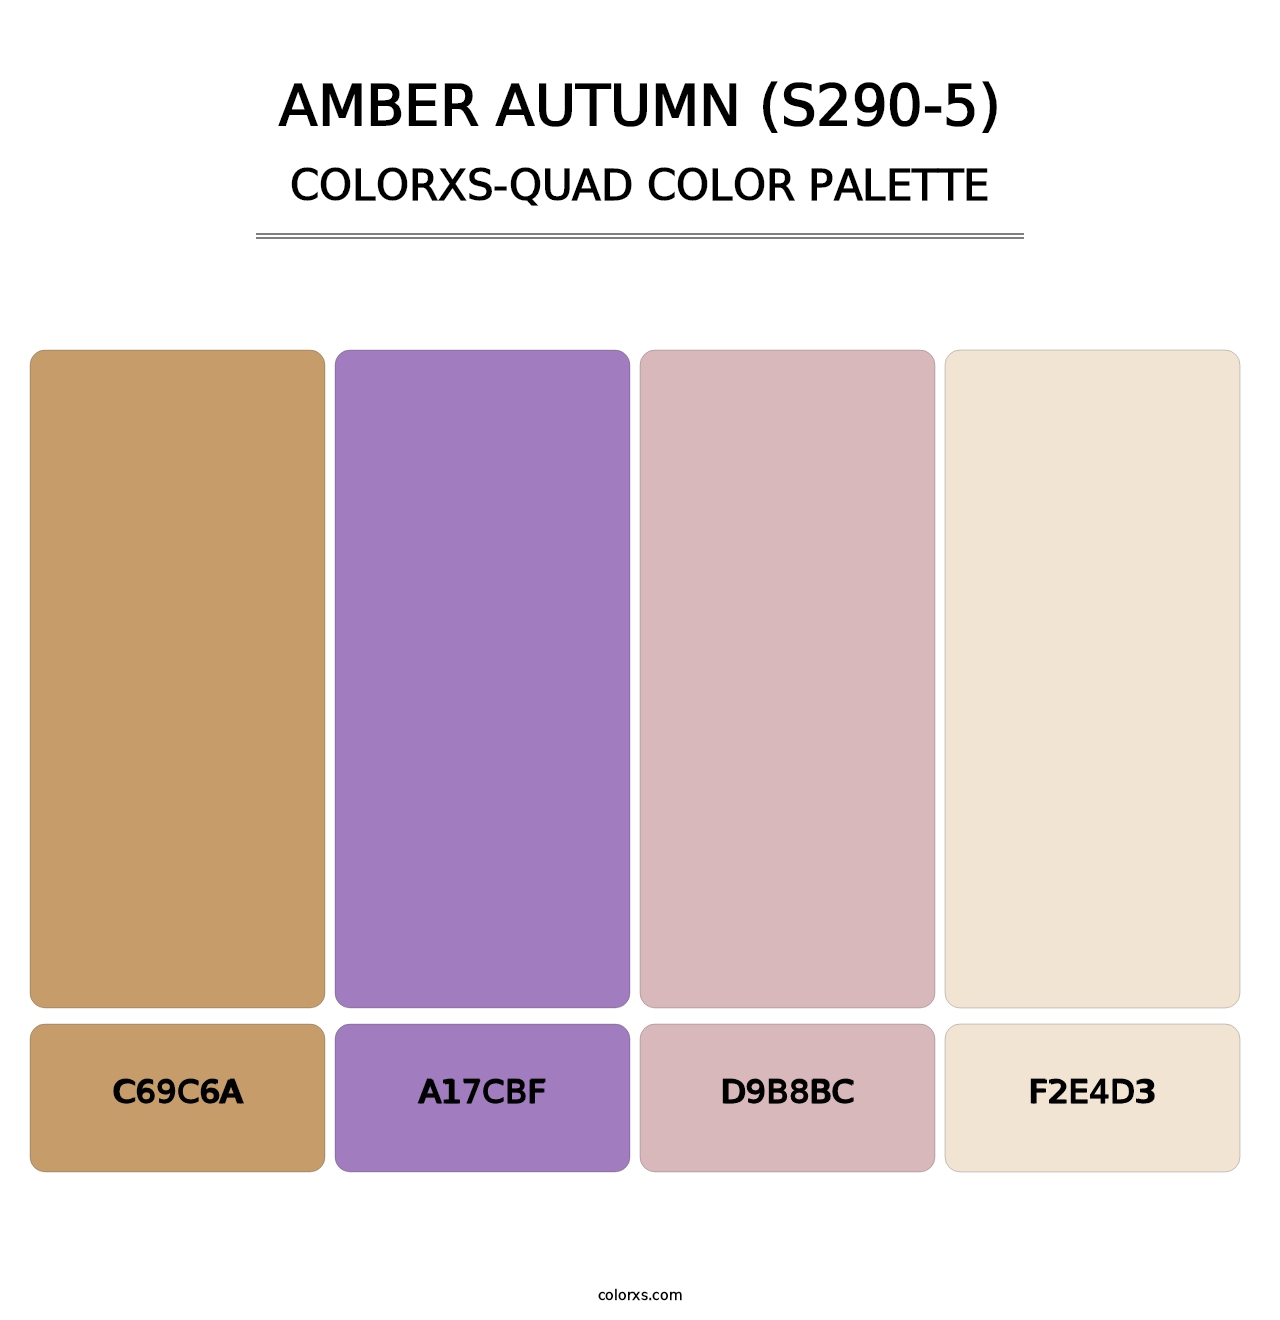 Amber Autumn (S290-5) - Colorxs Quad Palette